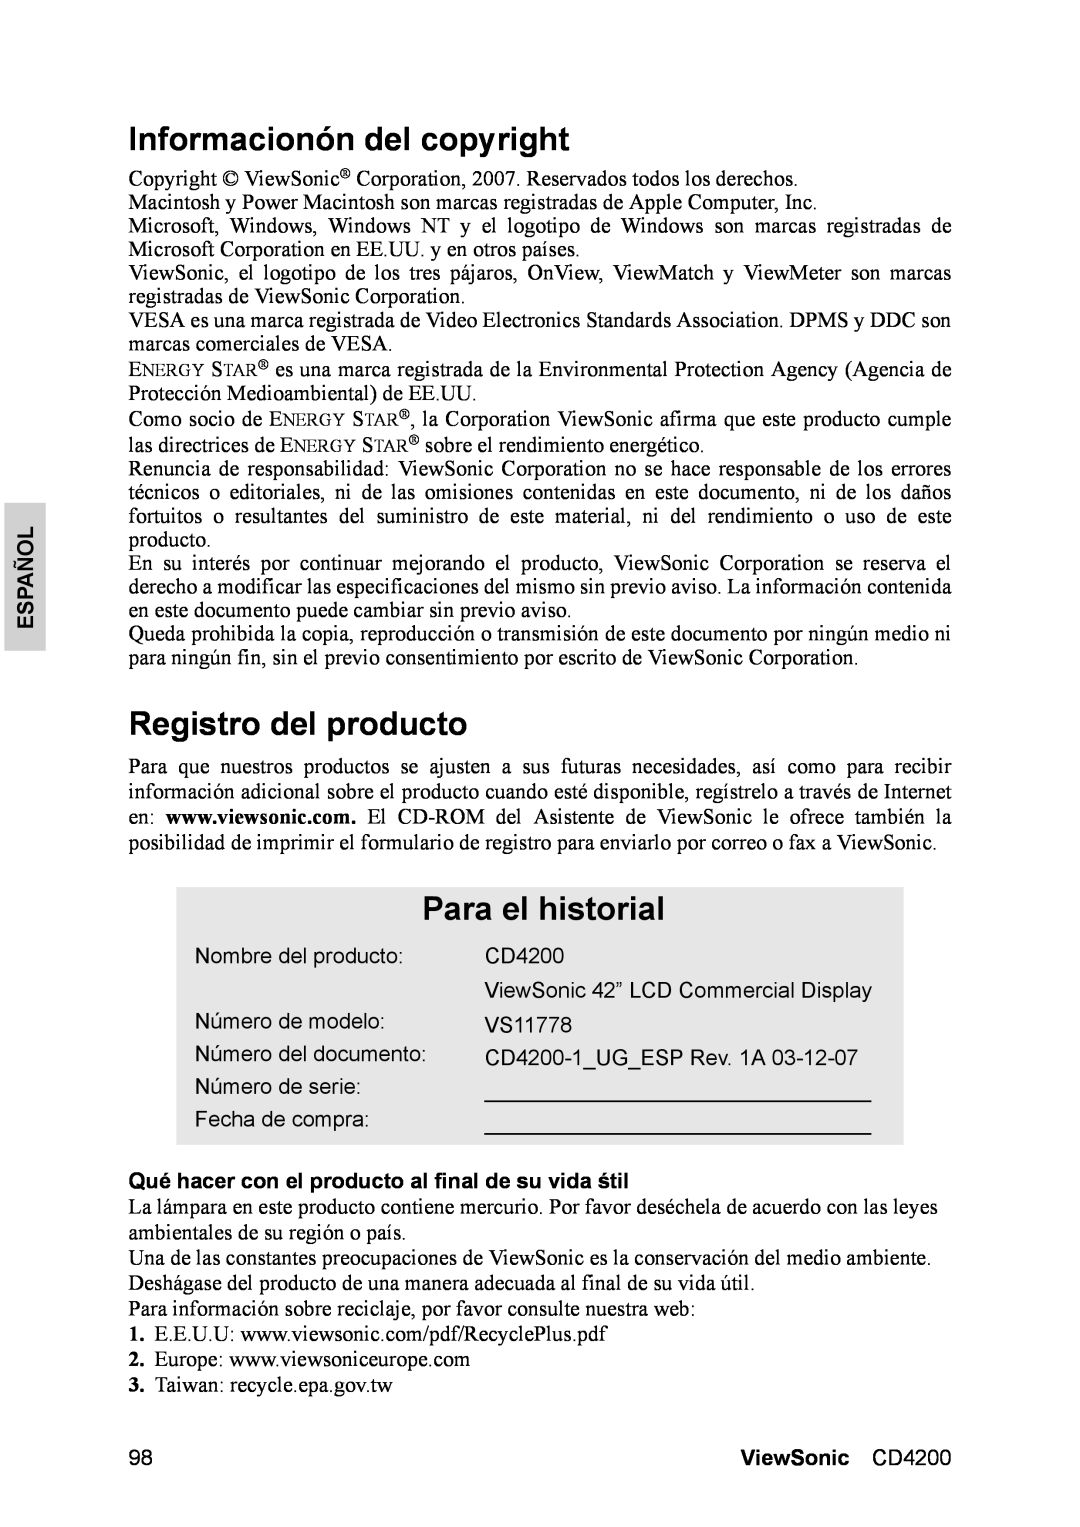 ViewSonic manual Informacionón del copyright, Registro del producto, Para el historial, Español, ViewSonic CD4200 